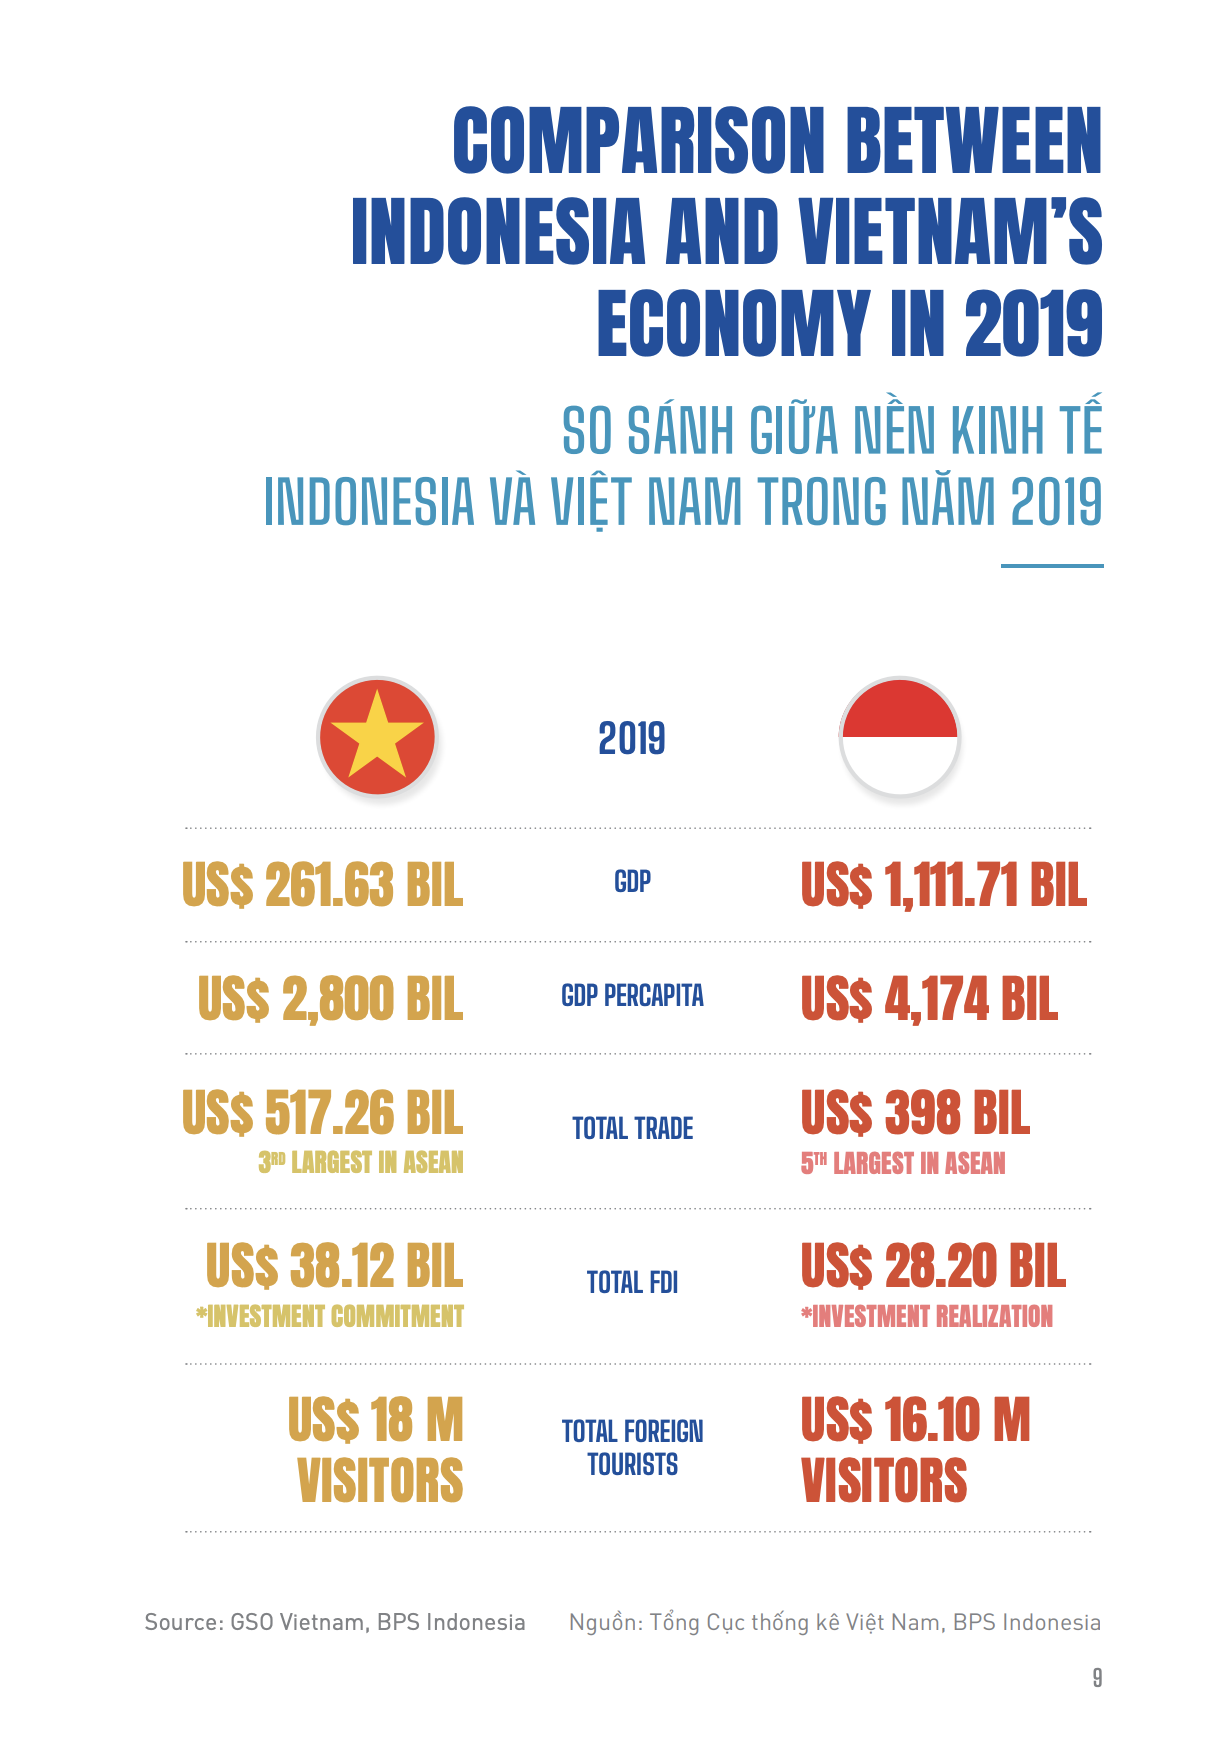 Dù nghèo hơn Indonesia, nhưng Việt Nam là một đất nước phát triển với nền kinh tế đang tăng trưởng mạnh mẽ và một bộ máy chính phủ hiệu quả. Hãy xem hình ảnh liên quan để tìm hiểu thêm về đất nước xinh đẹp này!